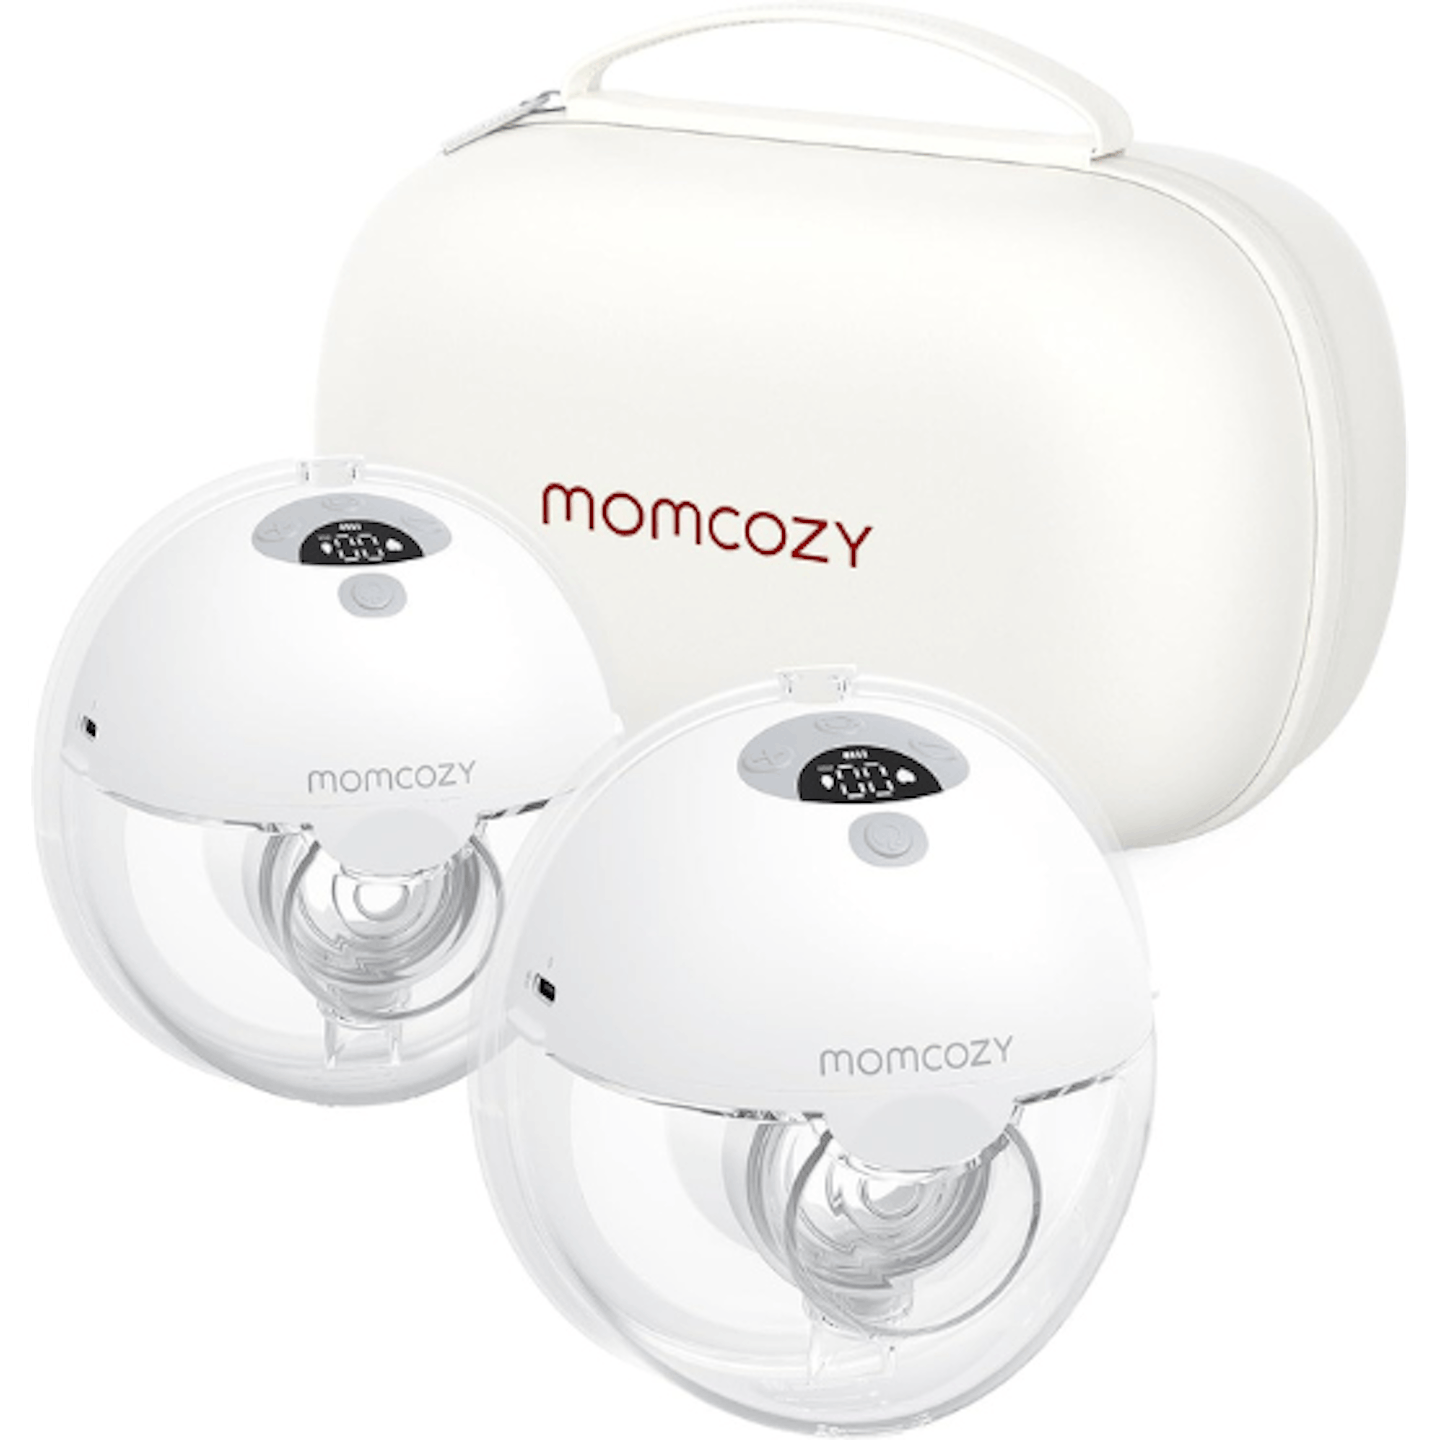 Momcozy review Momcozy M5